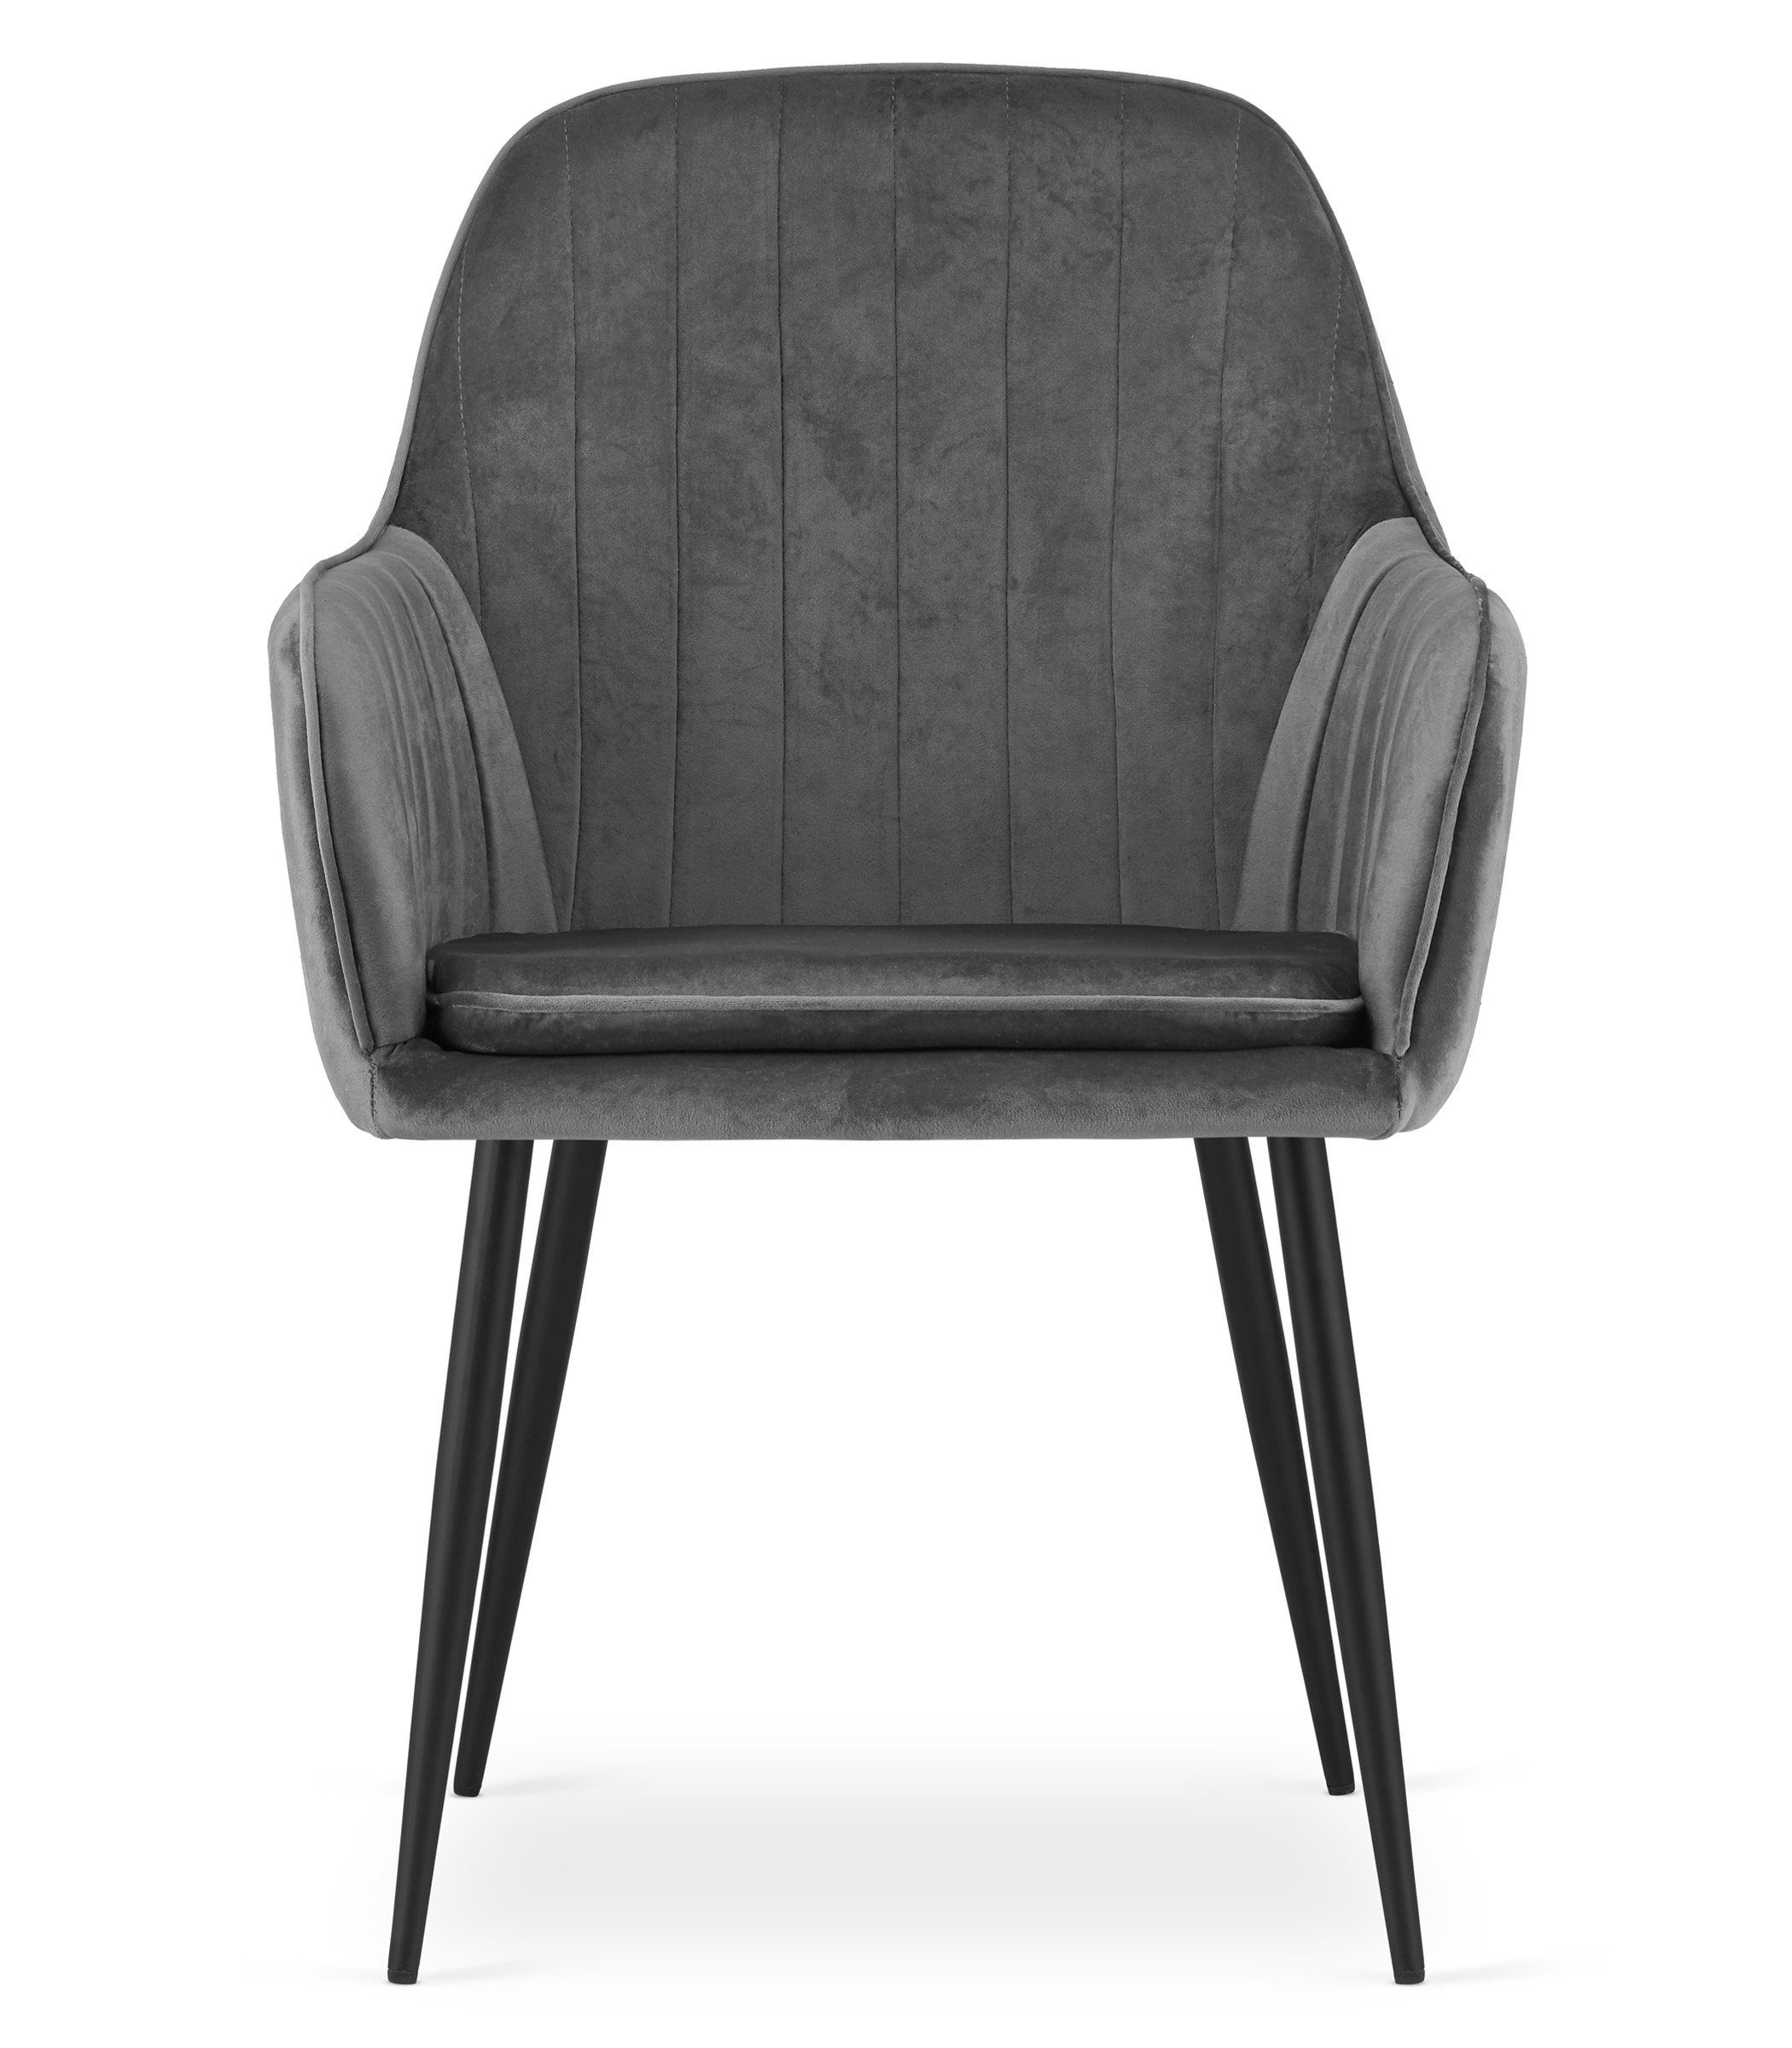 Polsterstuhl grau Home Collective dunkel schwarzen Set Stuhl Esszimmerstuhl Polster, 2er mit Beinen Wohnzimmerstuhl Esszimmerstuhl 2x